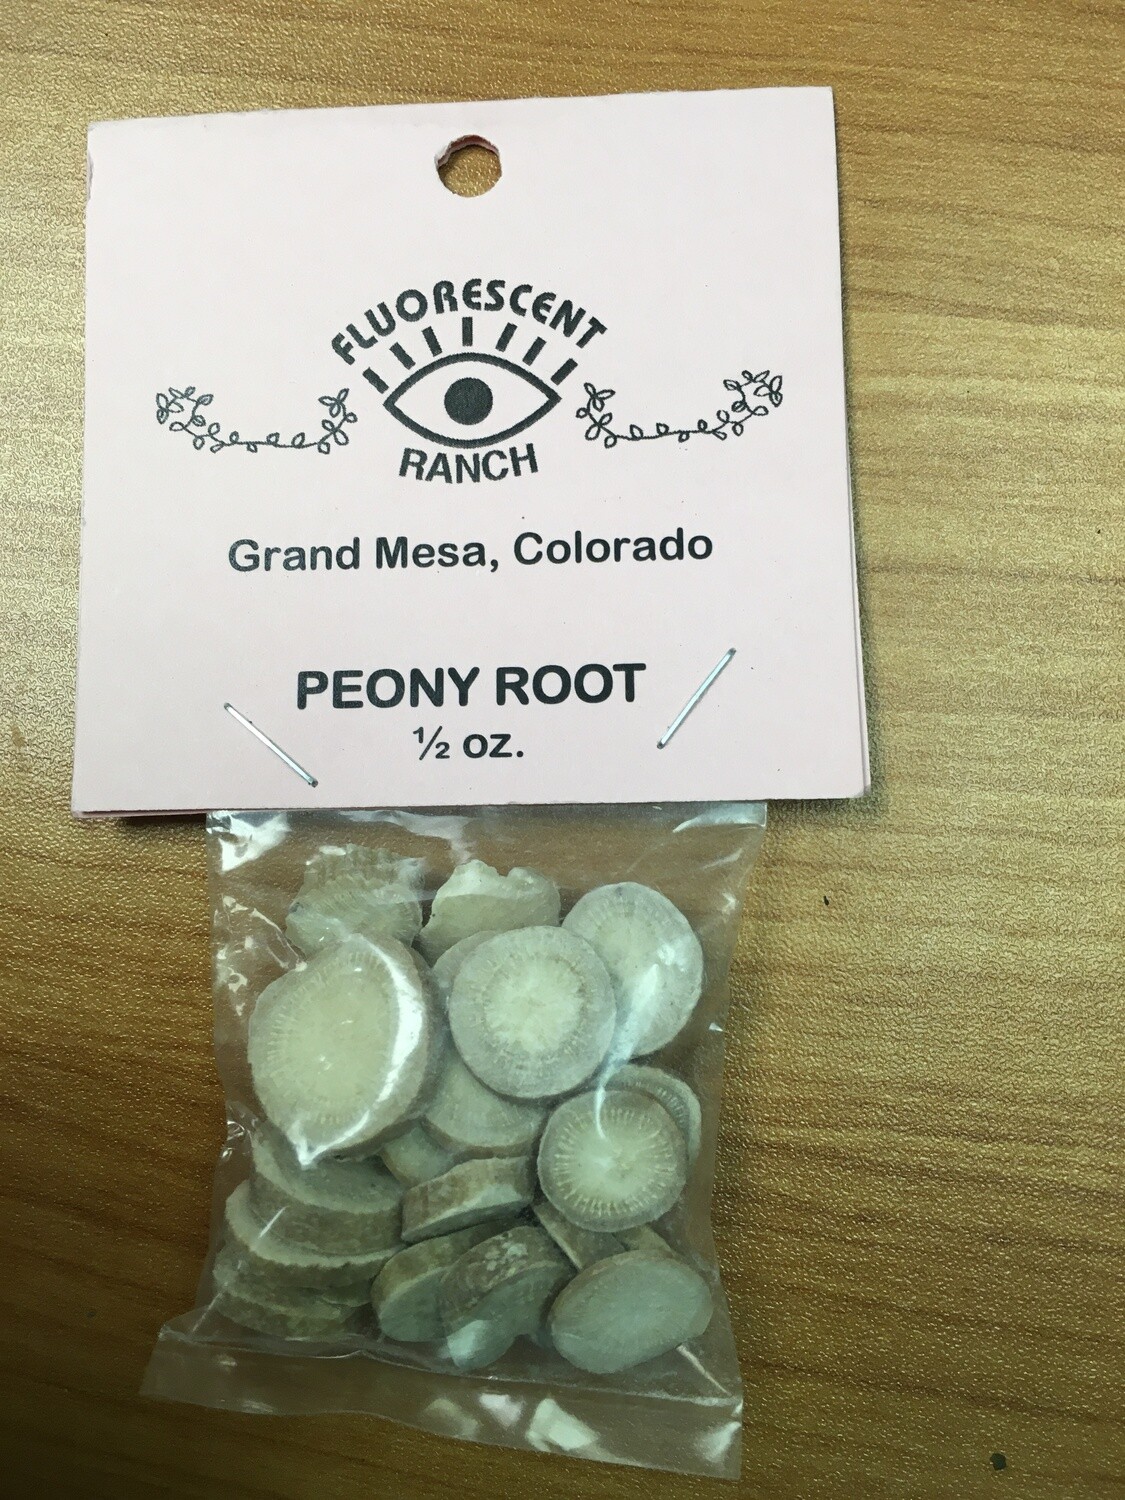 Peony Root